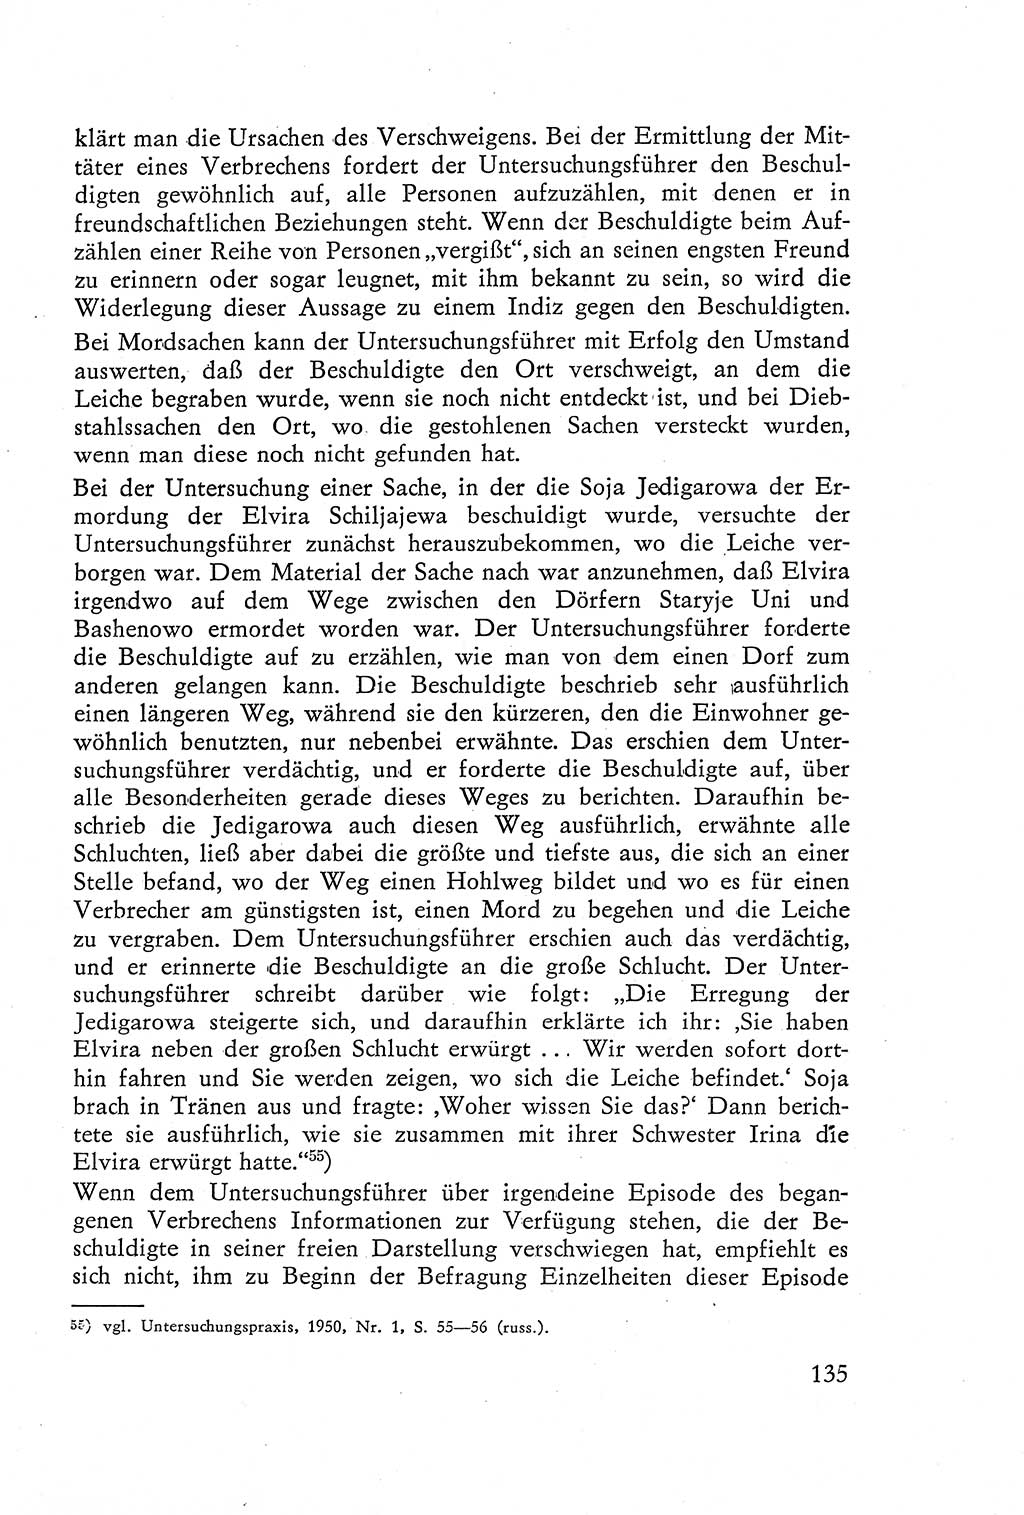 Die Vernehmung [Deutsche Demokratische Republik (DDR)] 1960, Seite 135 (Vern. DDR 1960, S. 135)